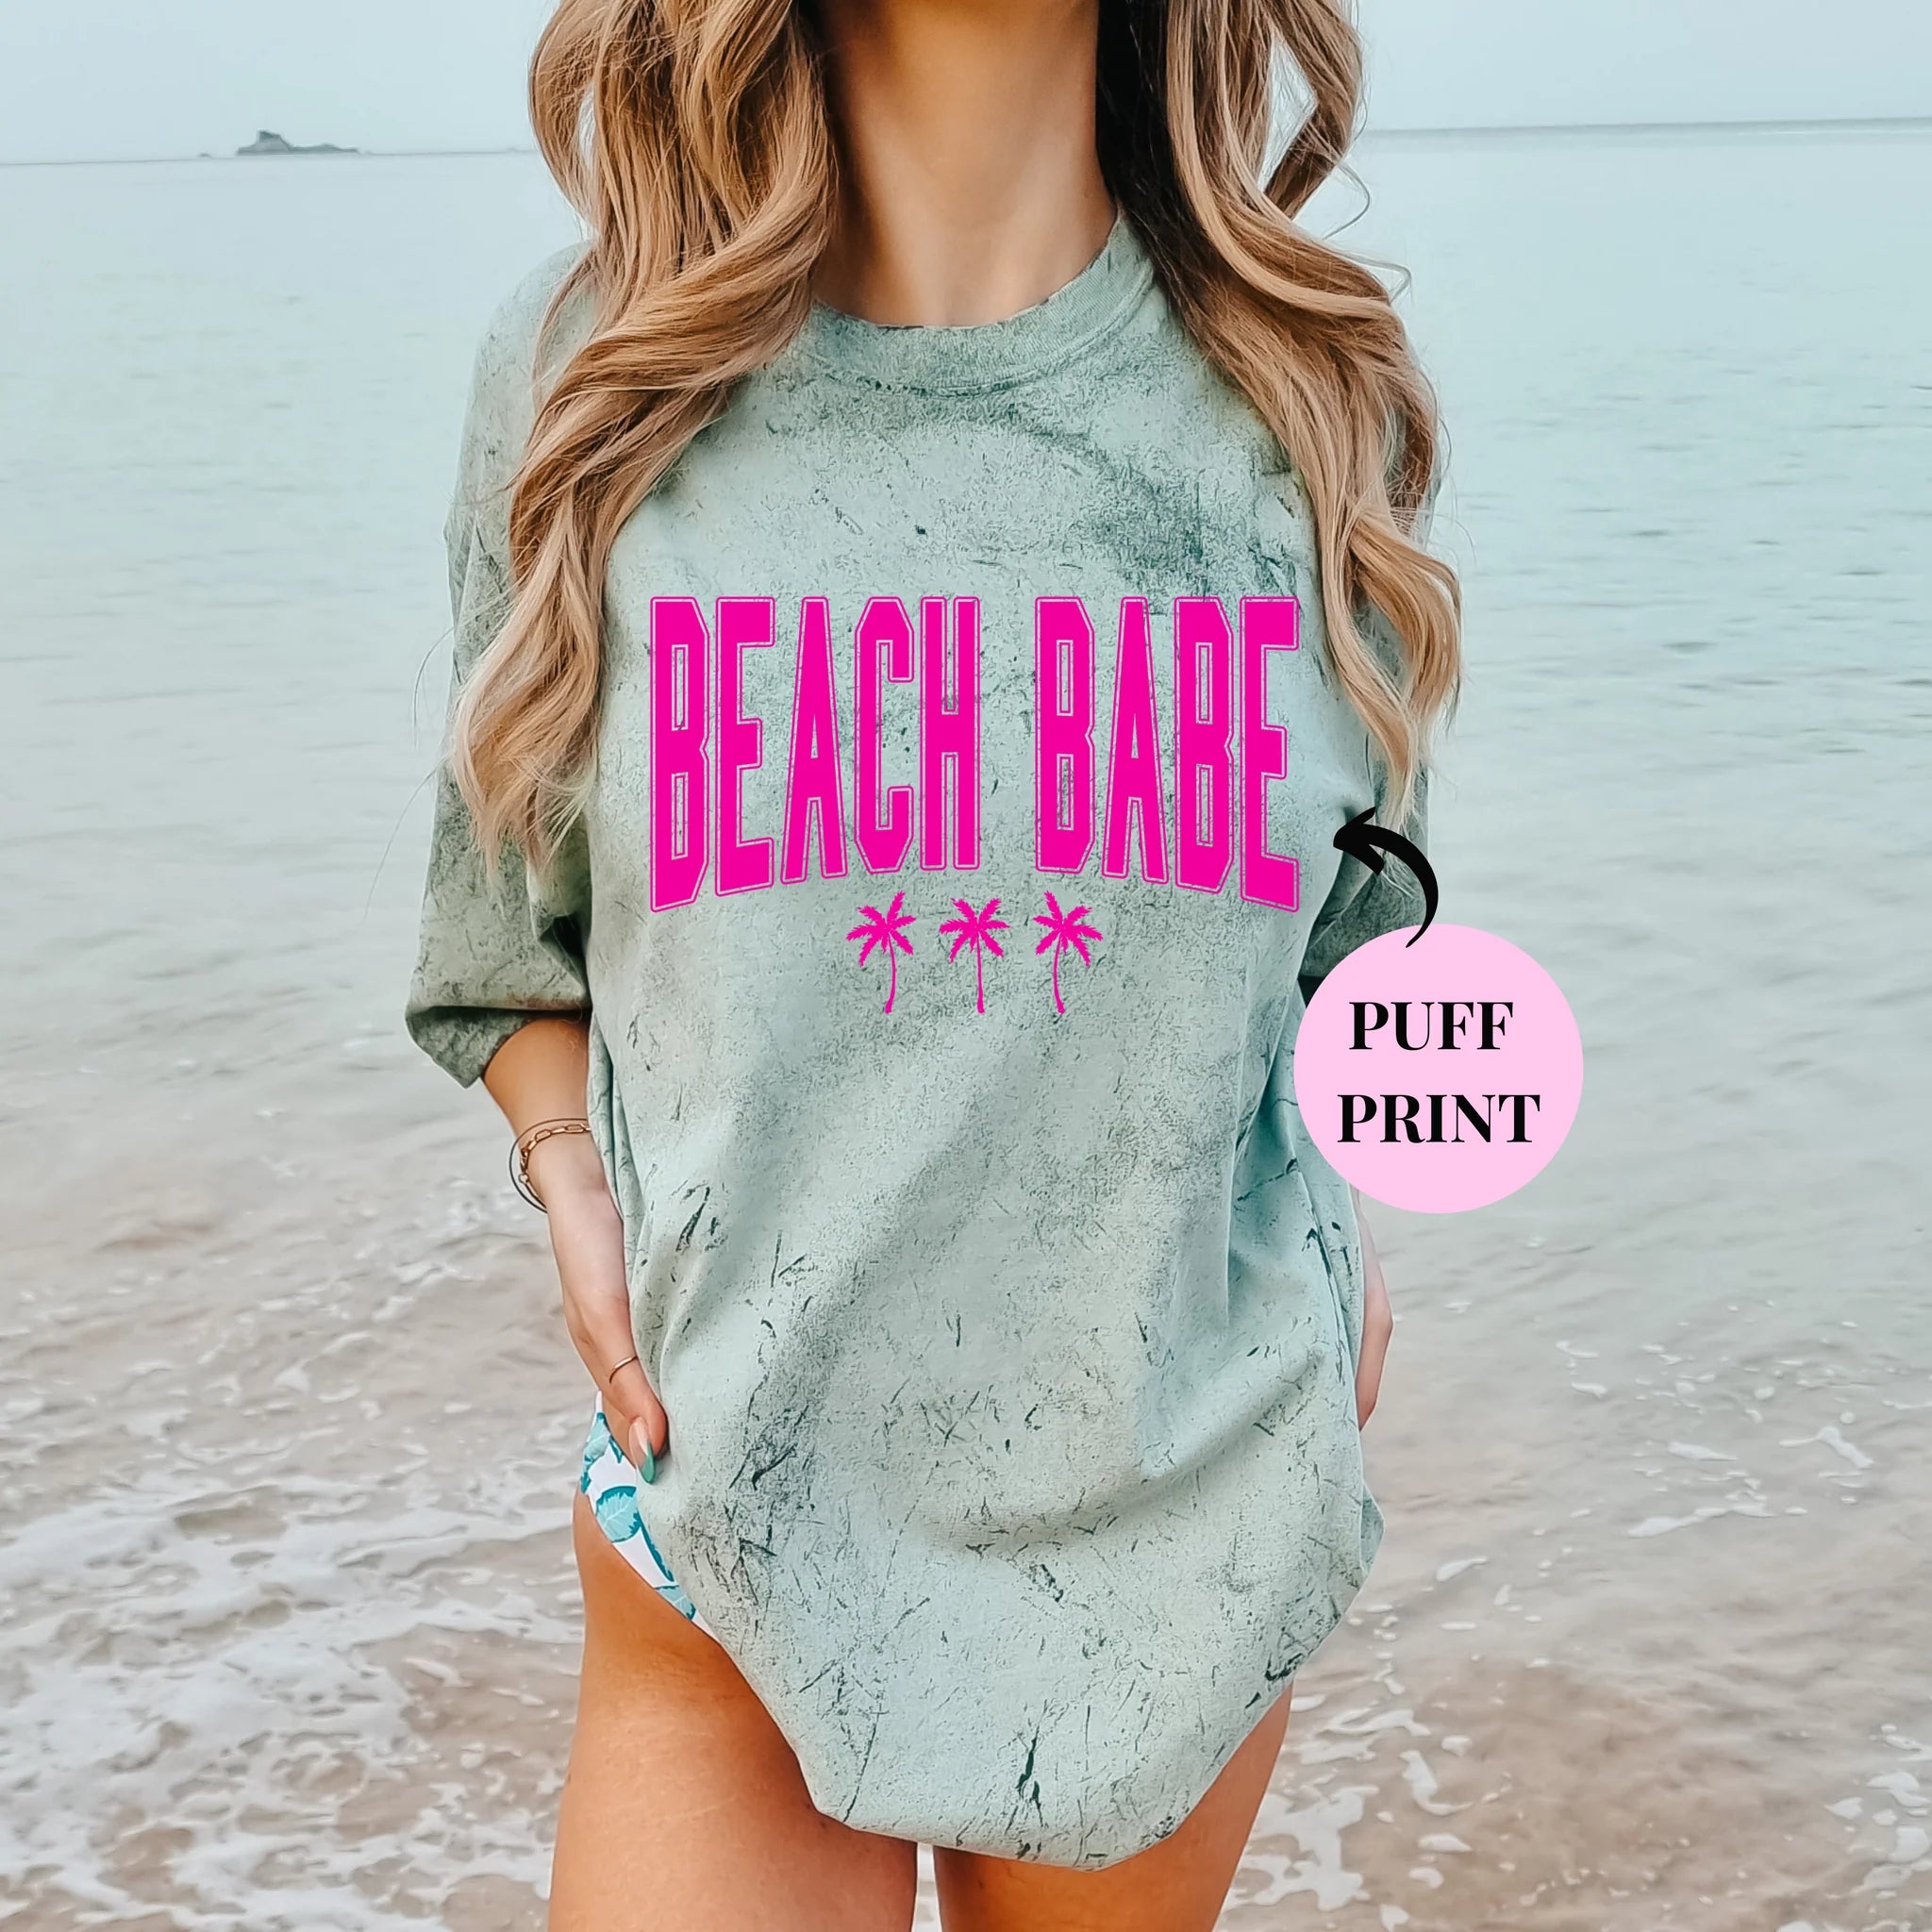 Beach Babe Tee (Puff Print)